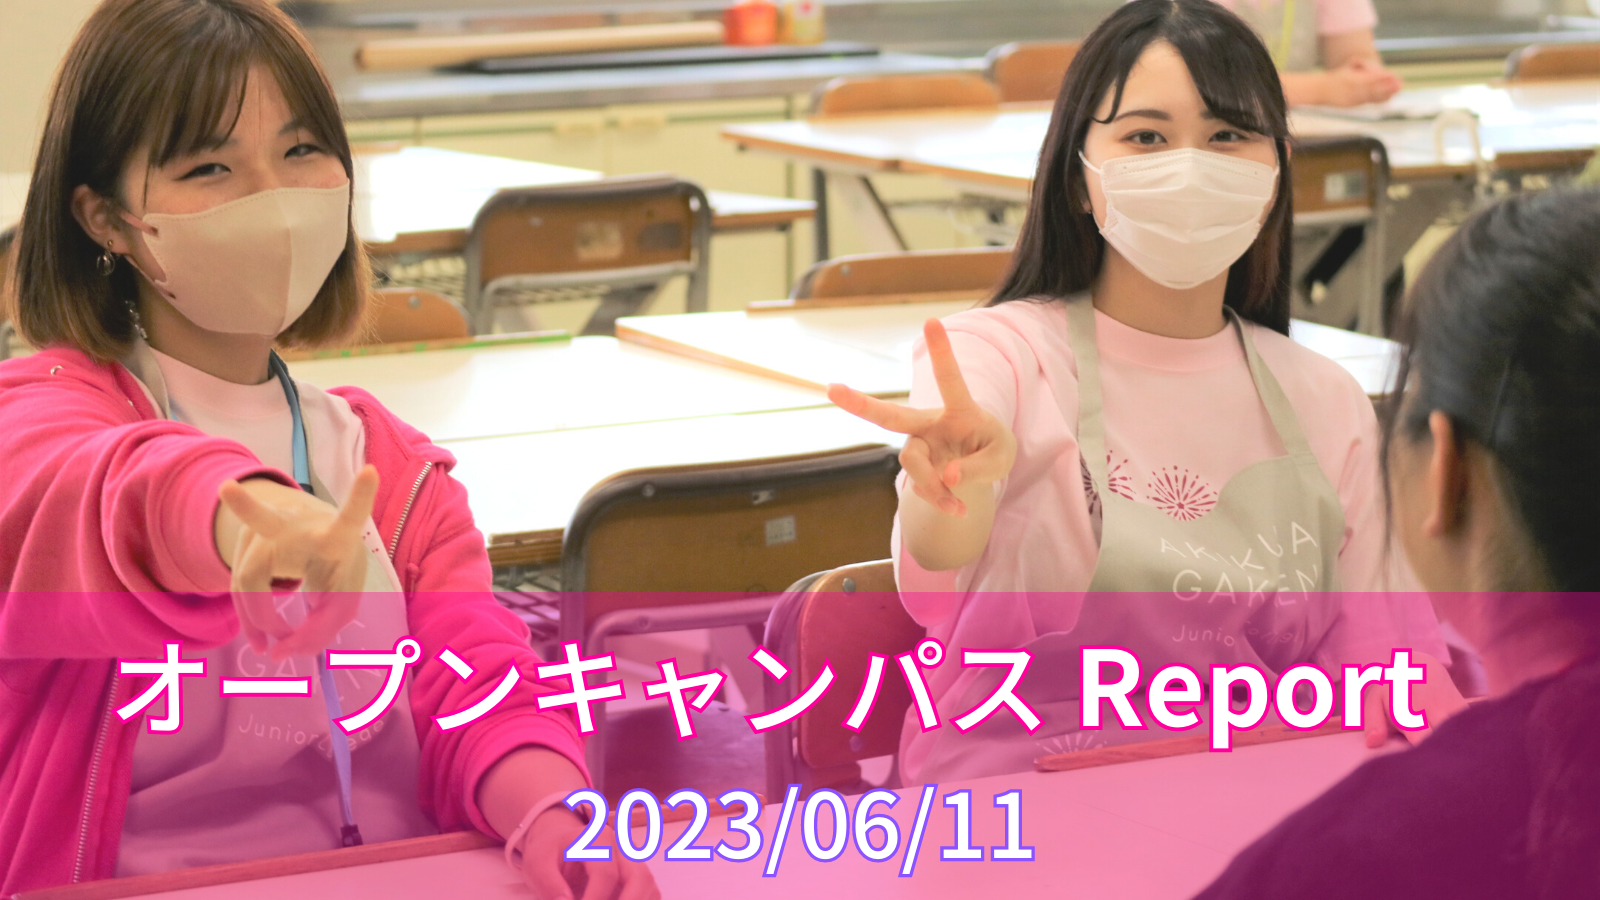 ［Report］6/11（日）オープンキャンパスレポート